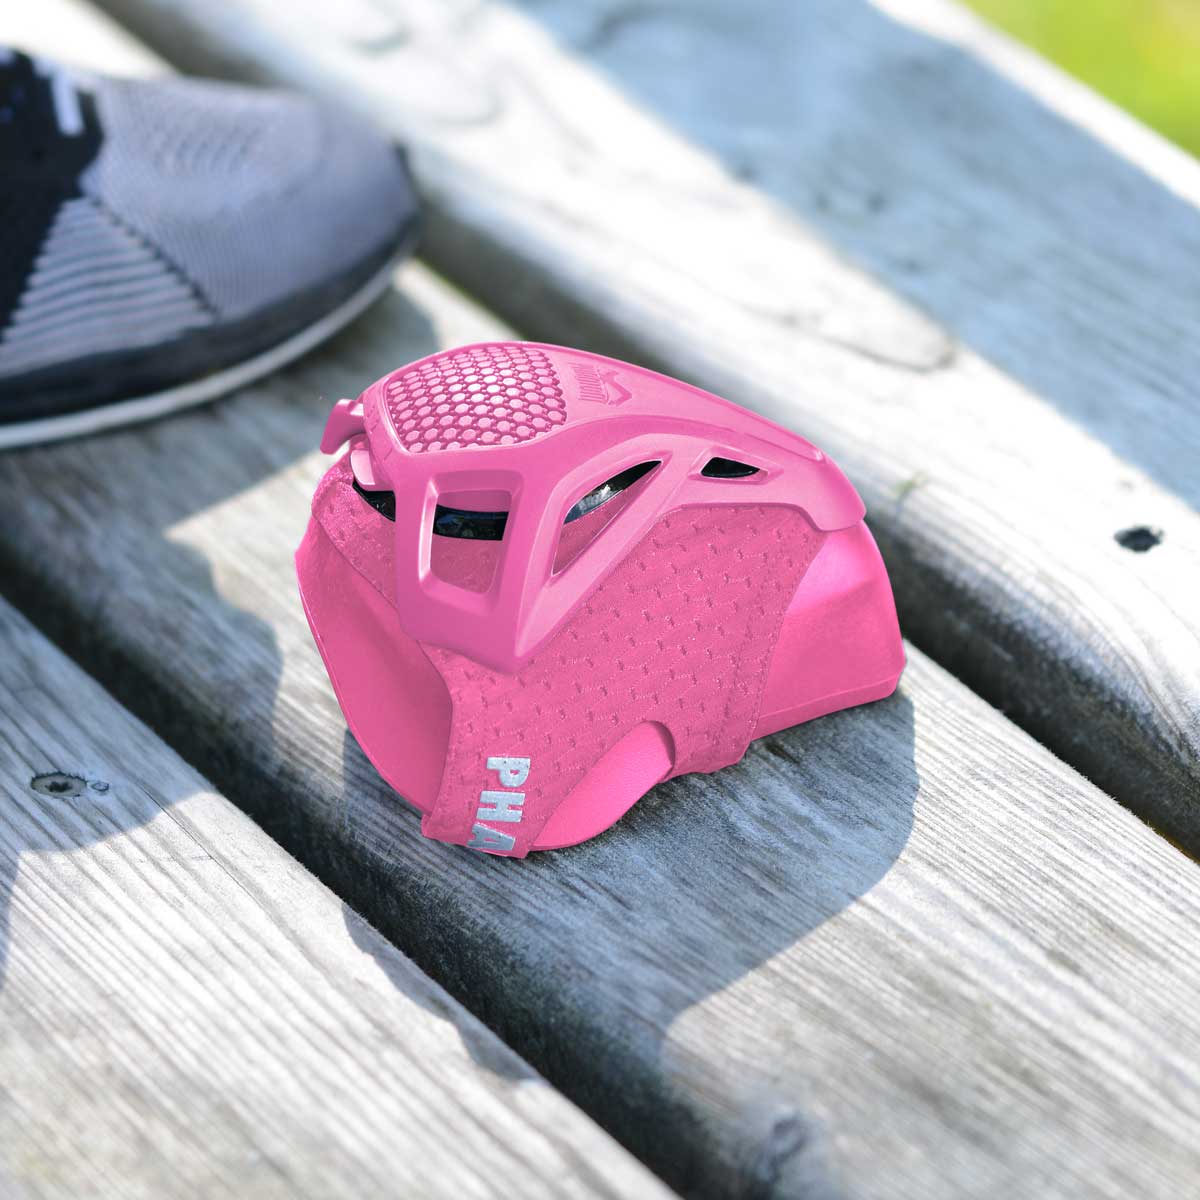 Die Phantom Trainingsmaske trainiert deine Atemmuskulatur und bietet dir somit ein funktionales Training um deine Fitness aufs nächste Level zu heben. Jetzt auch in der Farbe Pink.